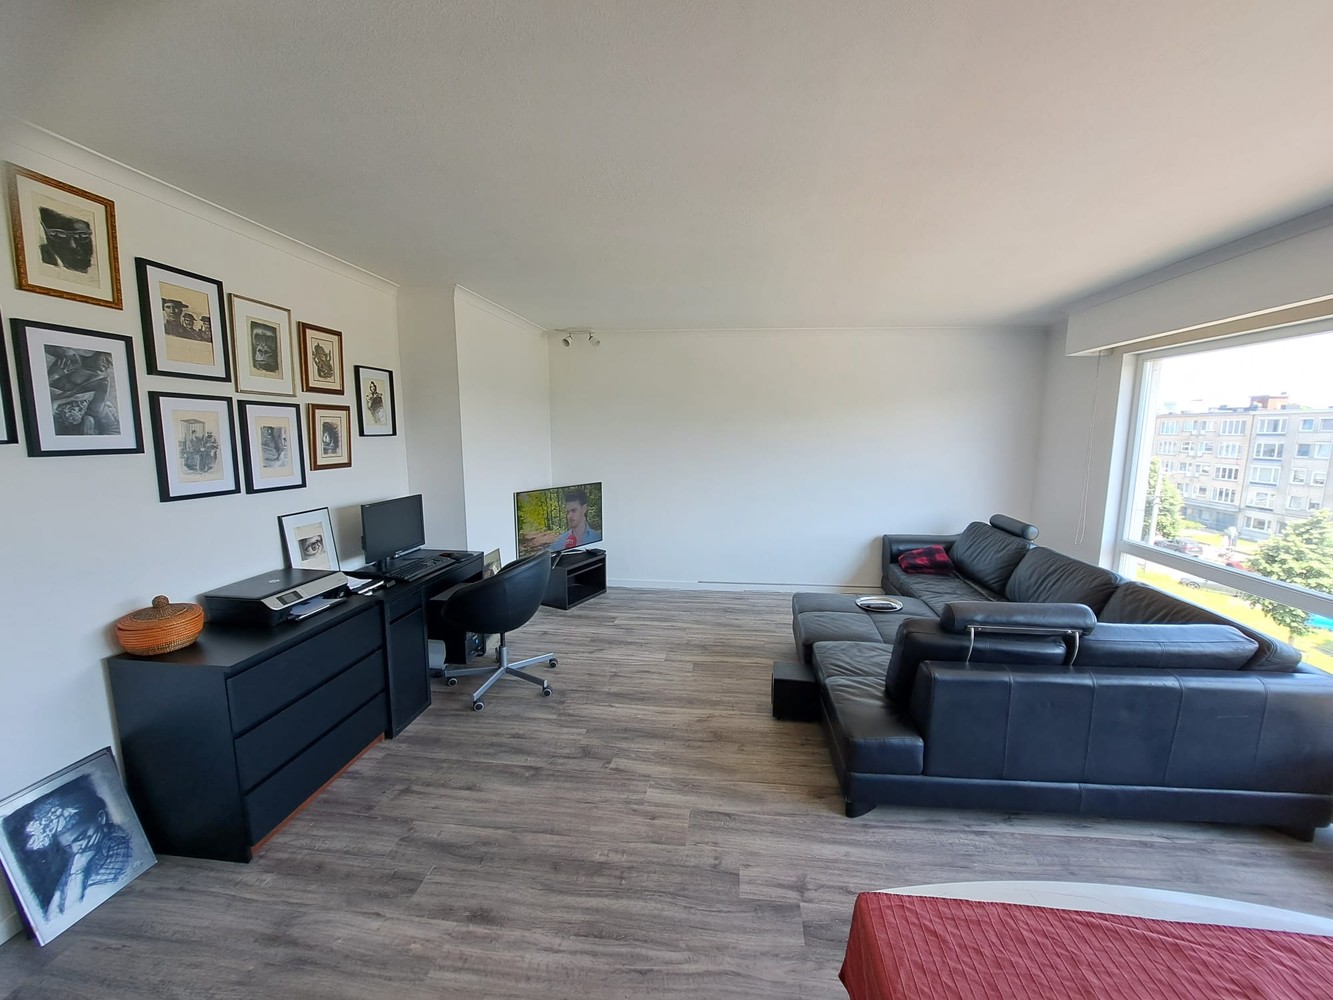 Ruim appartement met twee slaapkamers te koop in Deurne! afbeelding 3